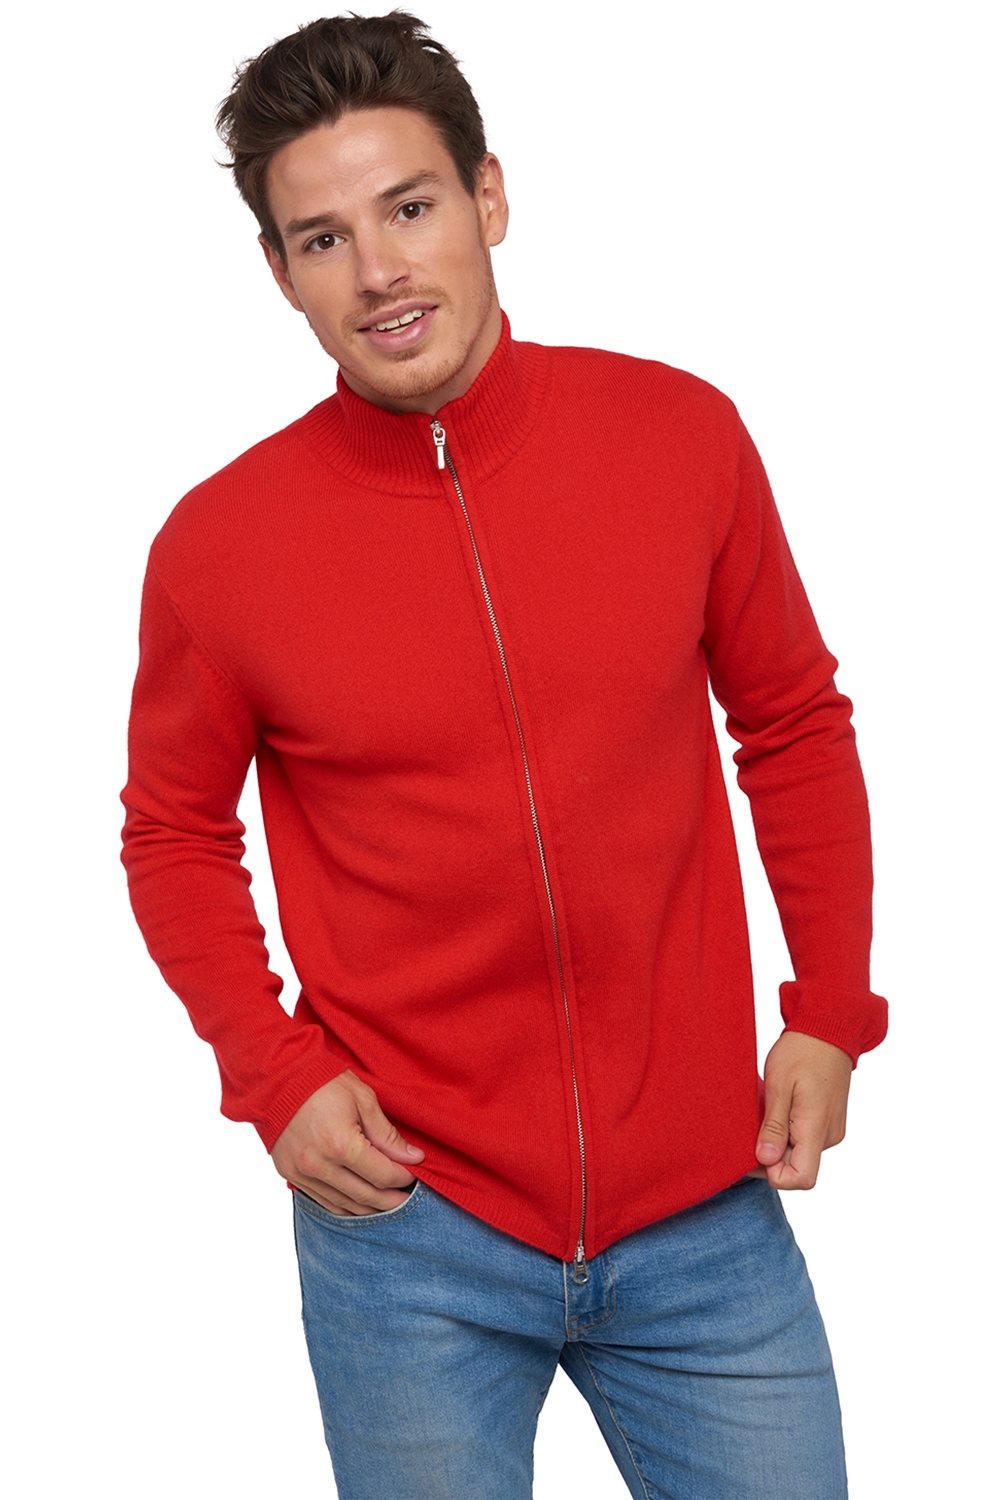 Cashmere men waistcoat sleeveless sweaters elton rouge 3xl